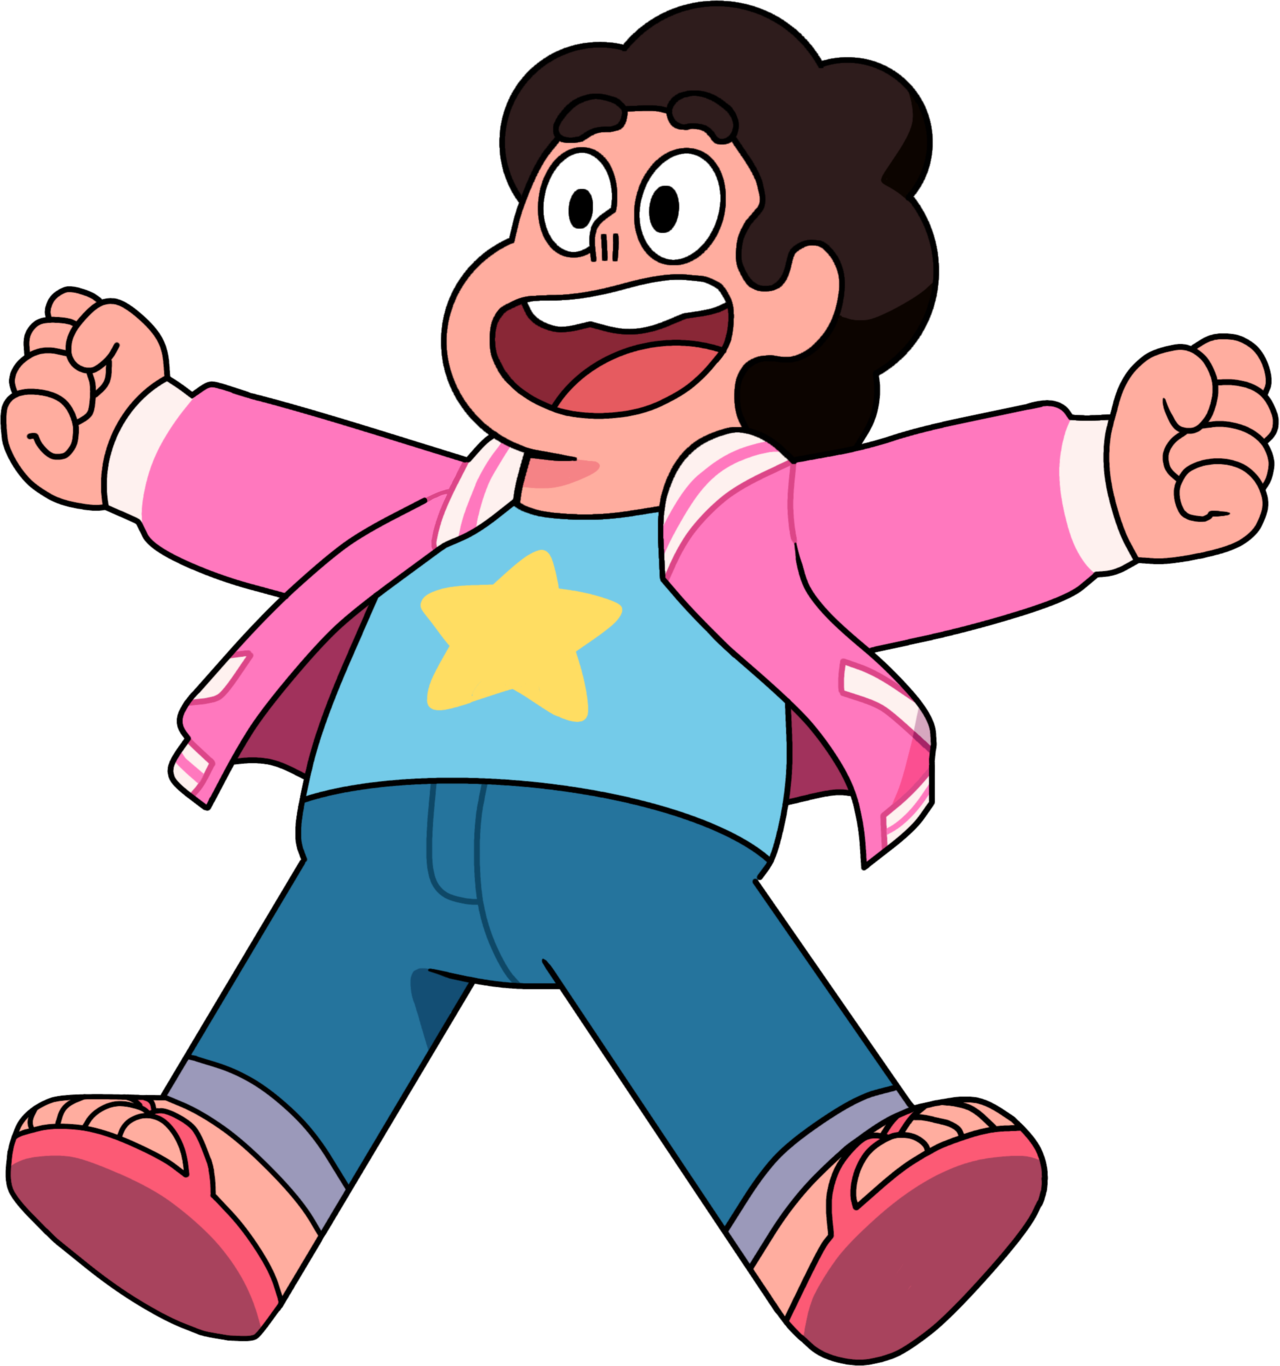 Imagen PNG de dibujos animados del universo de Steven